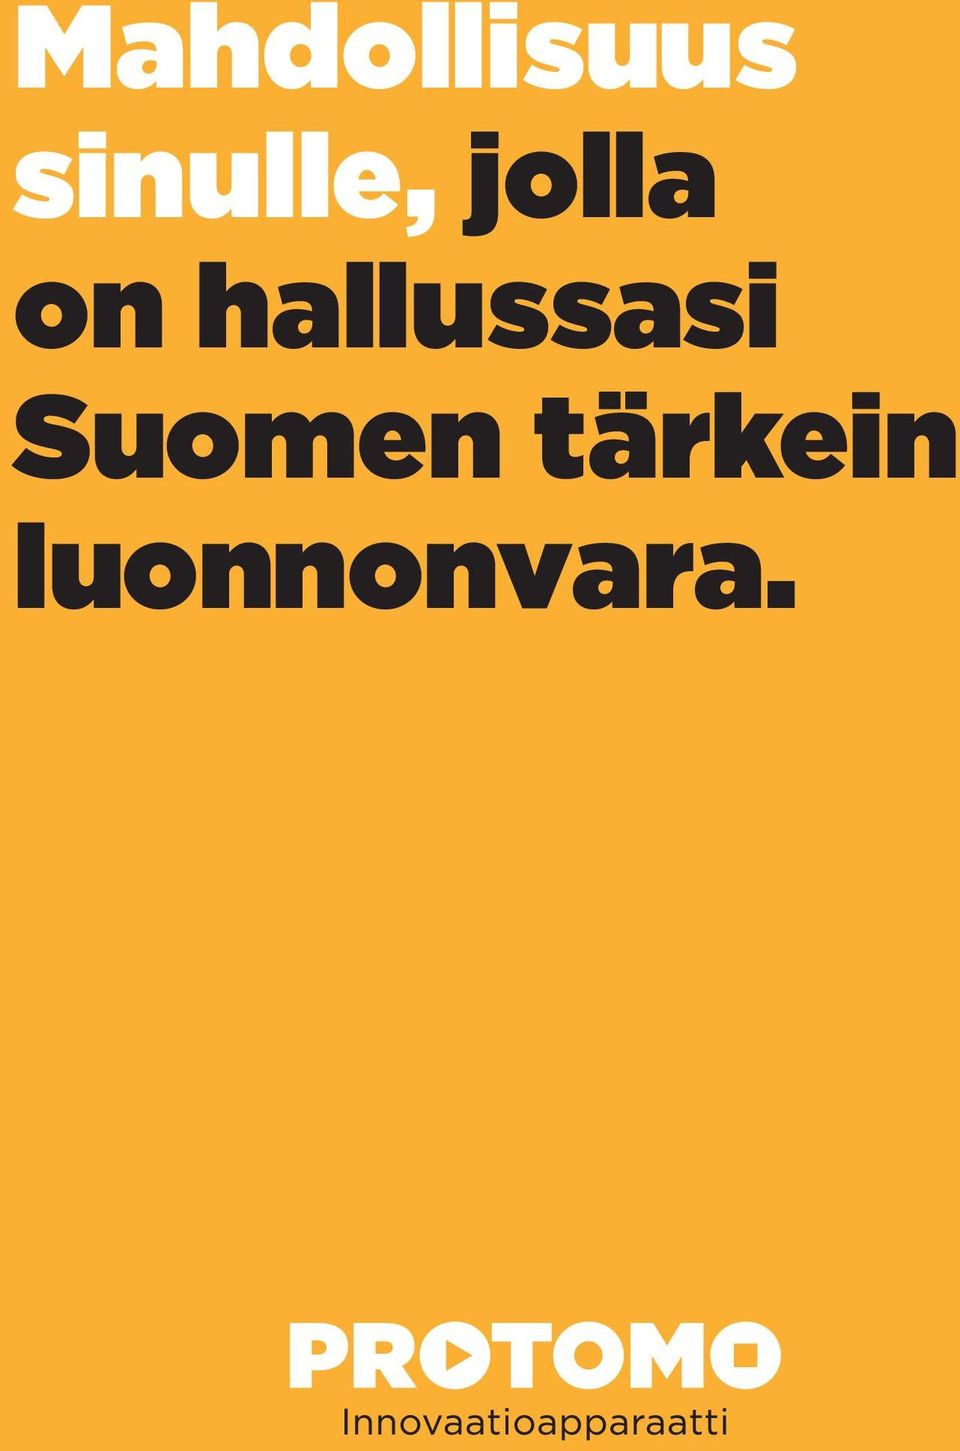 hallussasi Suomen